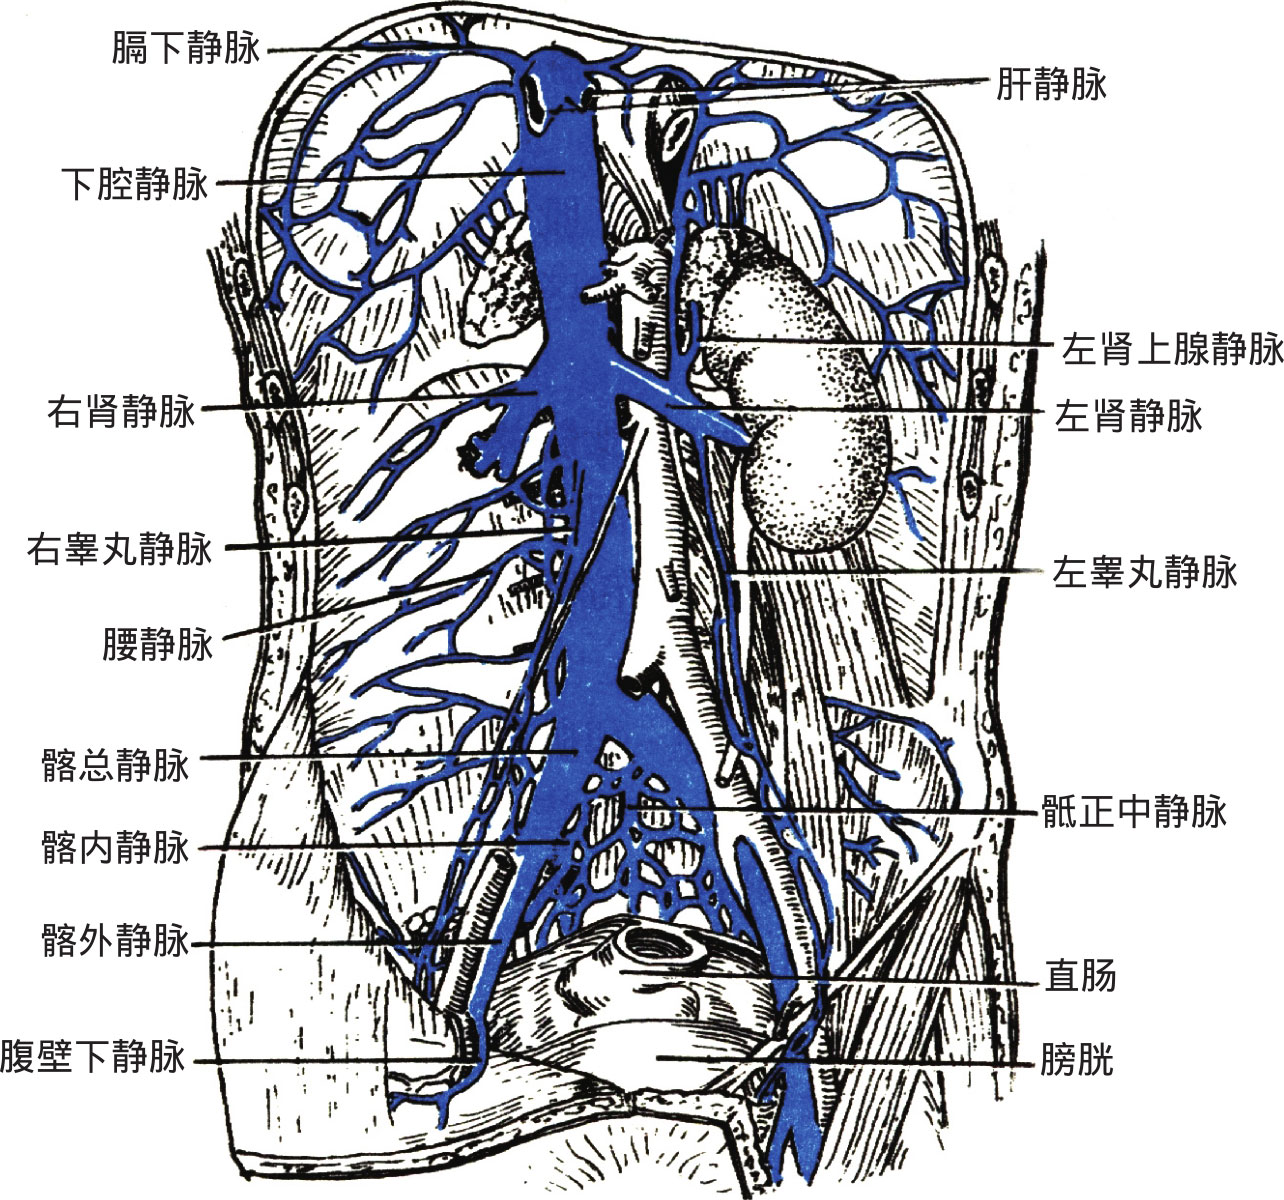 肝门静脉下腔静脉图片